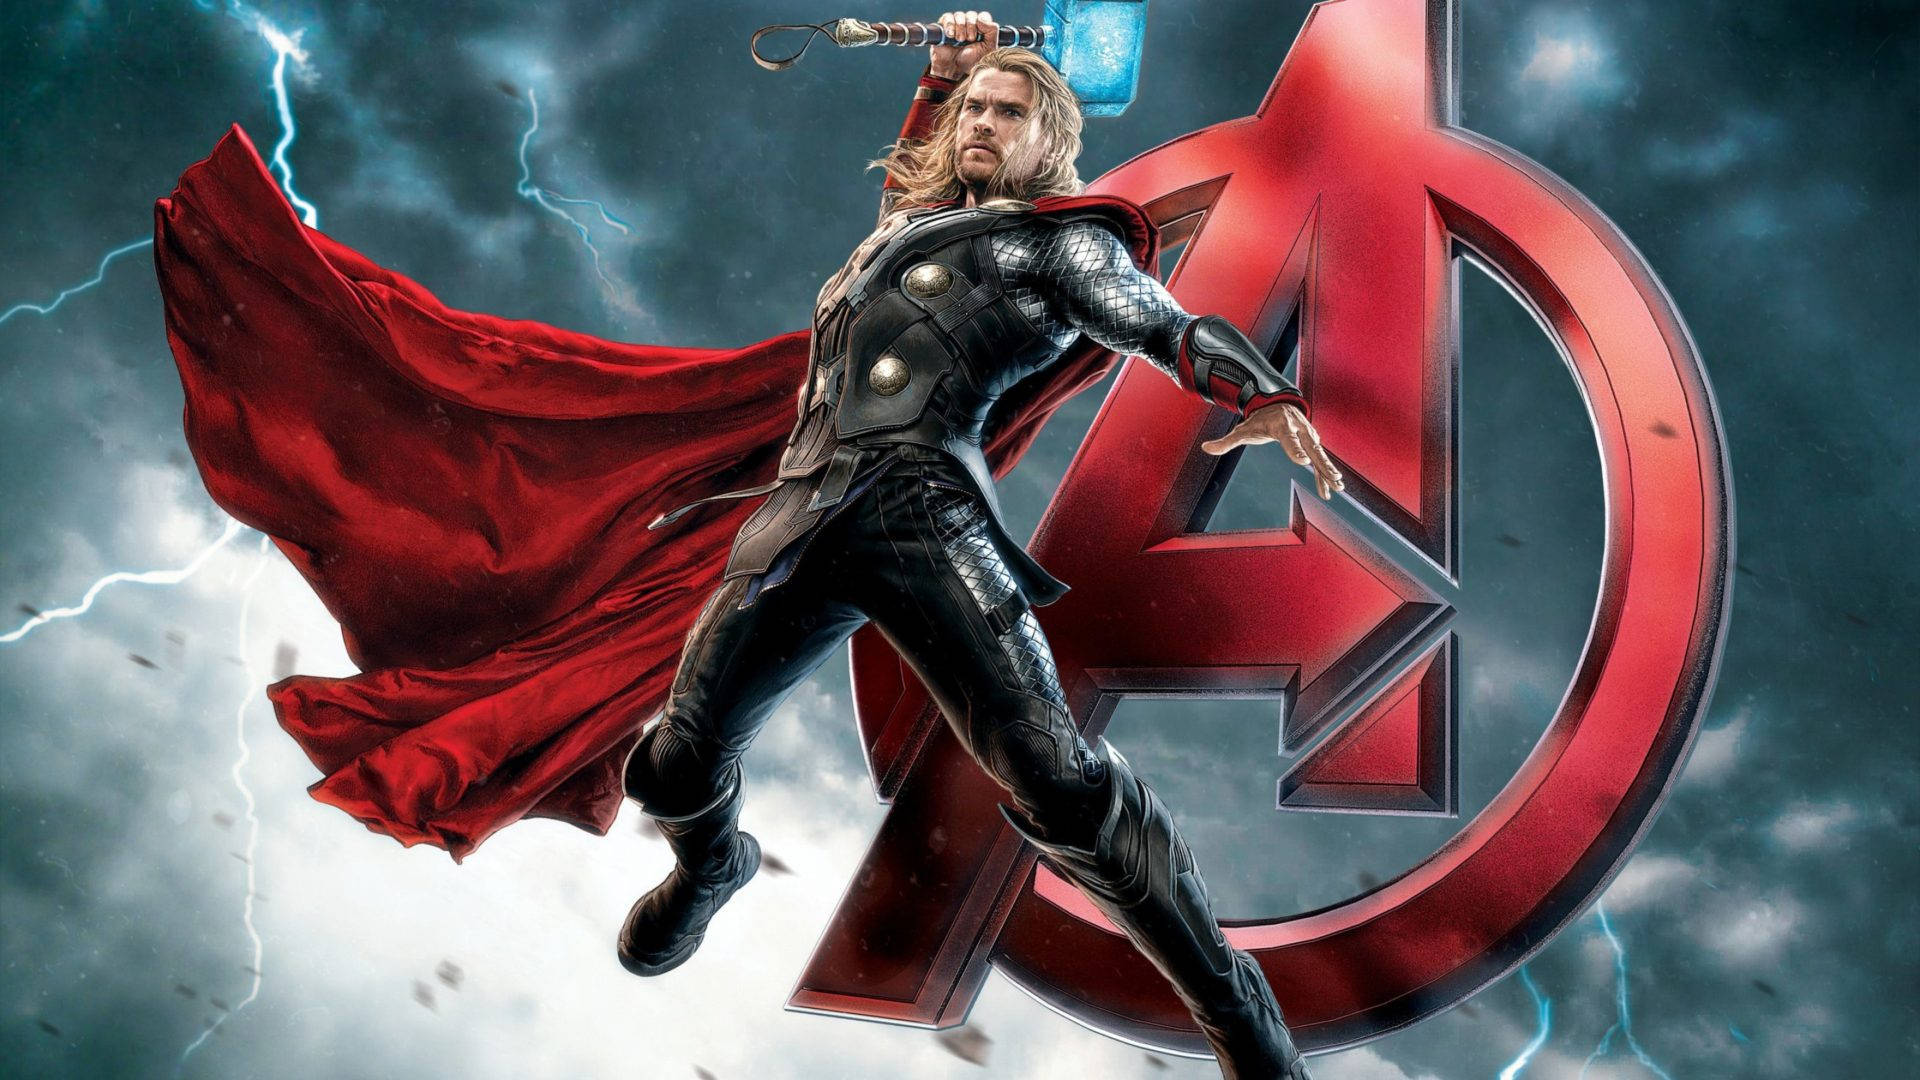 Thor Superhero Member Of Avengers Background